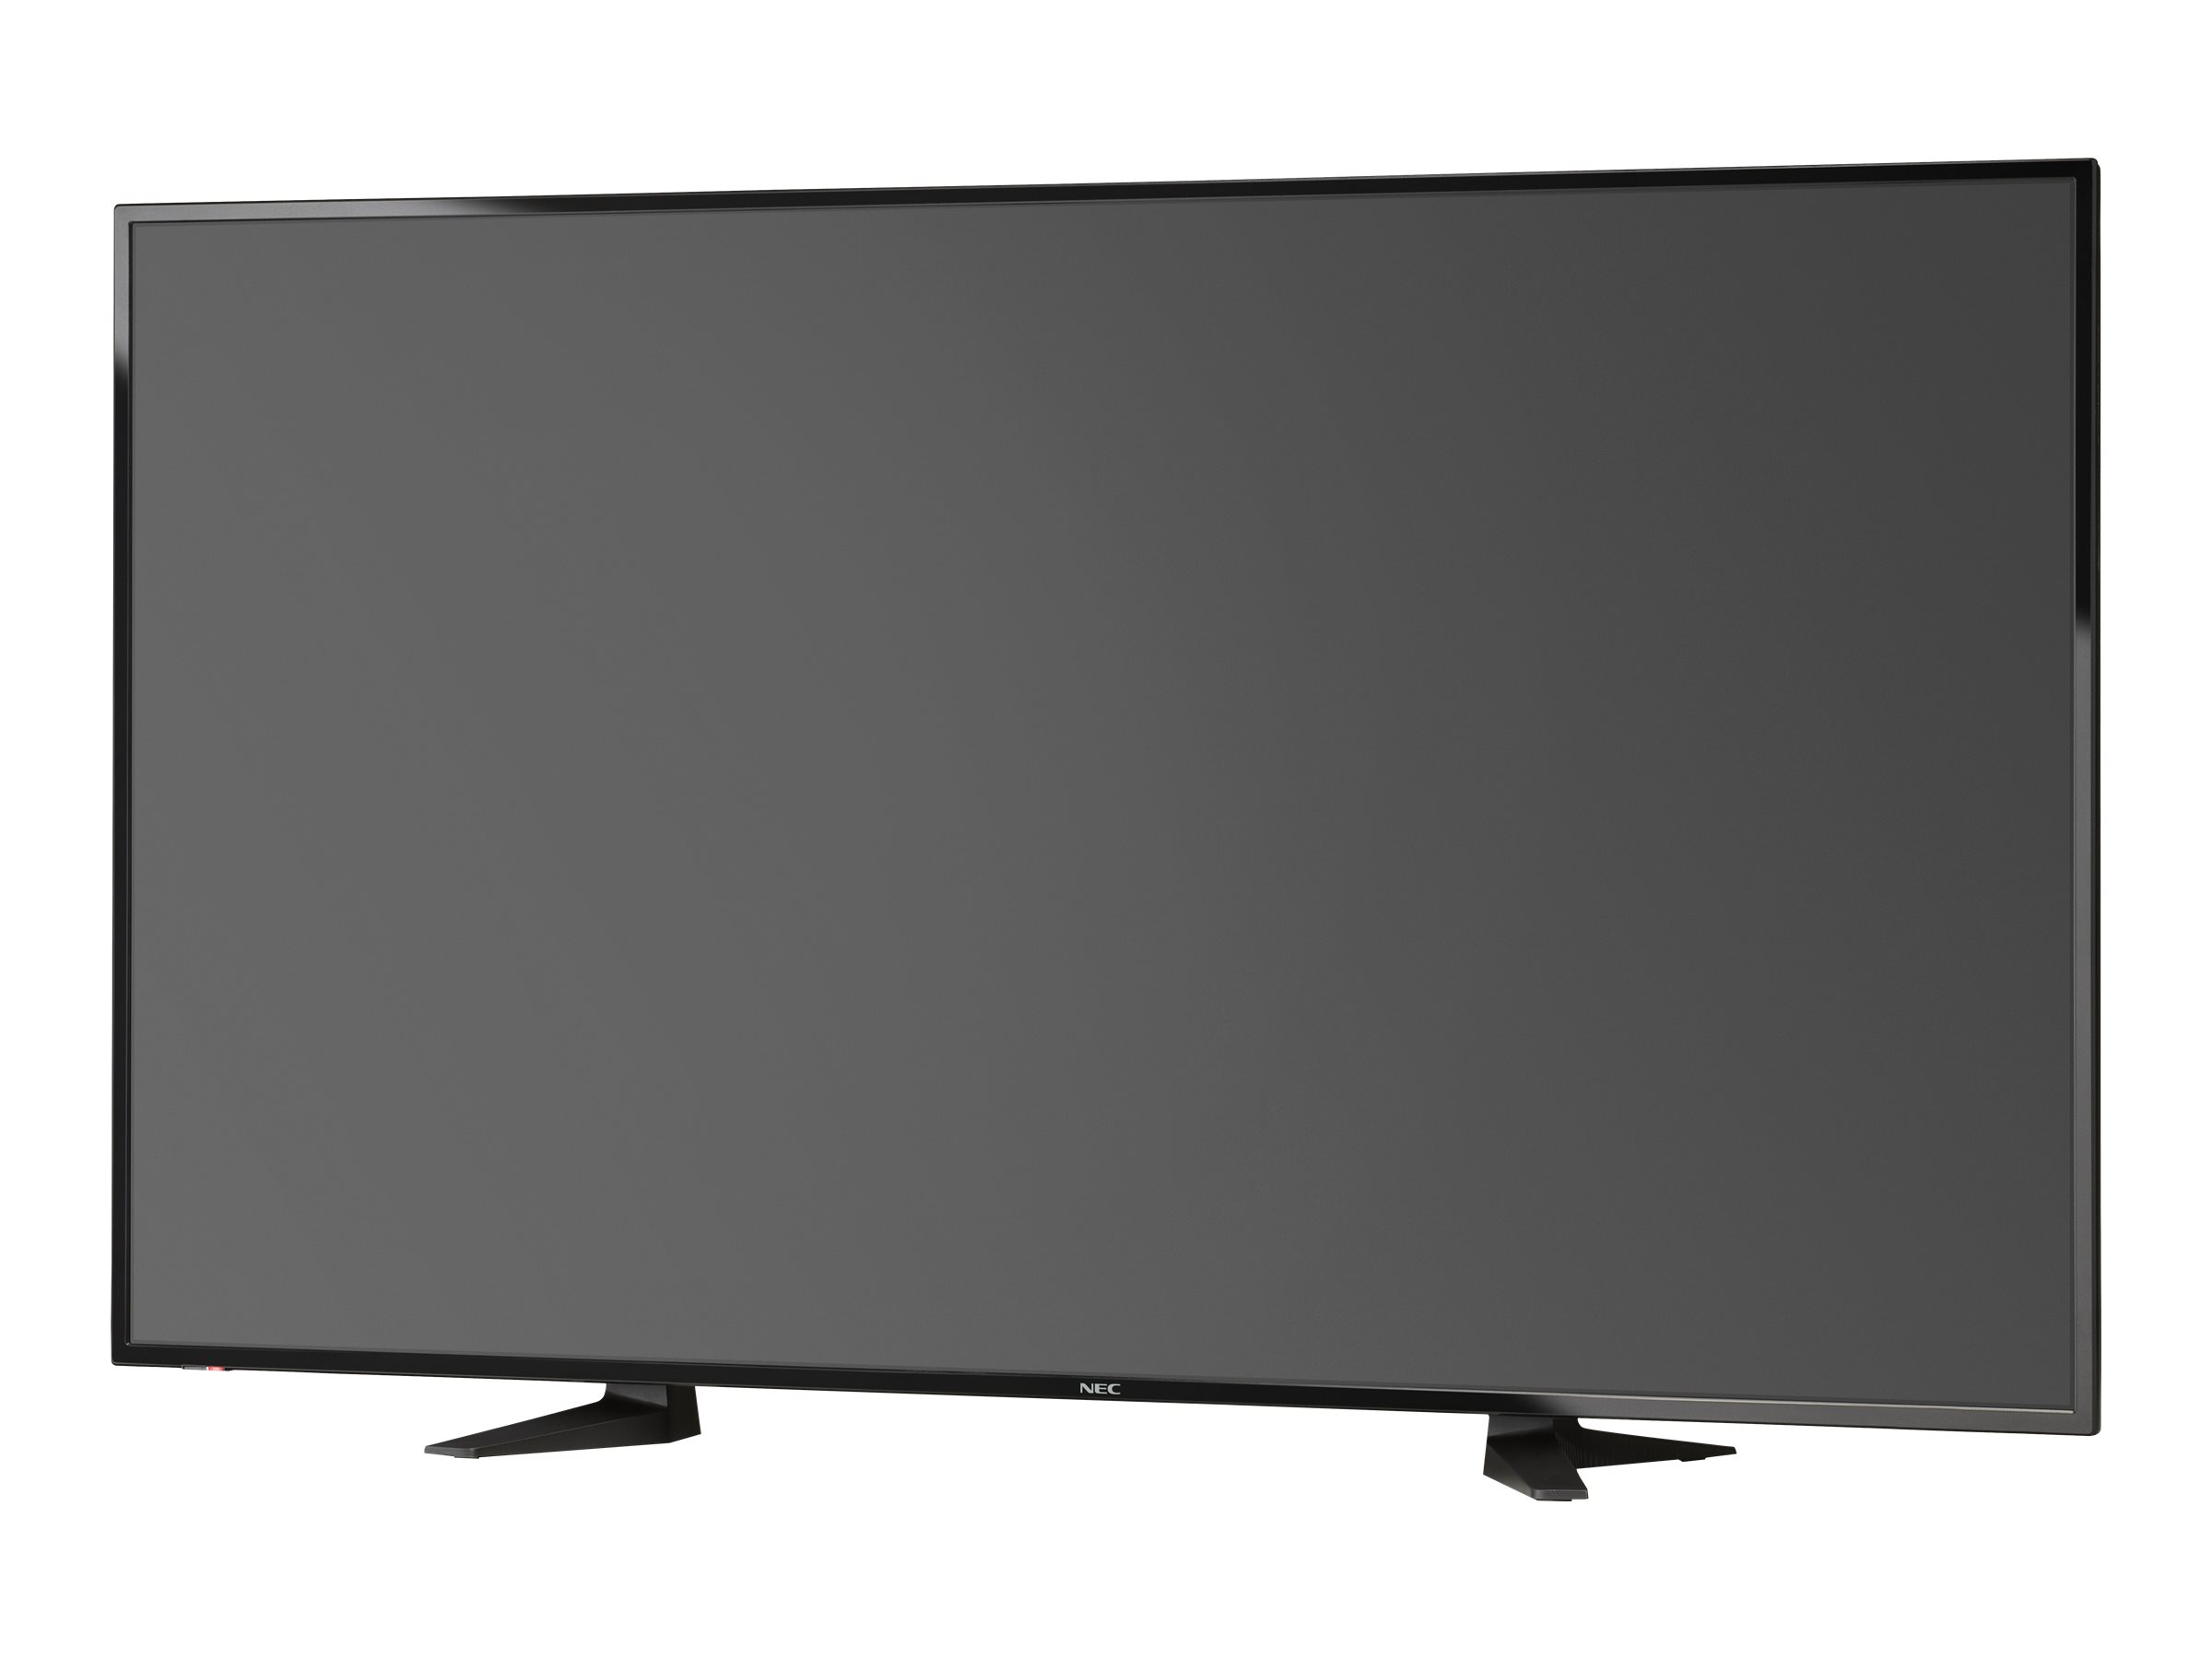 NEC ST-65M - Pied - pour Écran LCD - Taille d'écran : 65" - ordinateur de bureau - pour NEC ME651; MultiSync M651, ME651 - 100015622 - Montages pour TV et moniteur